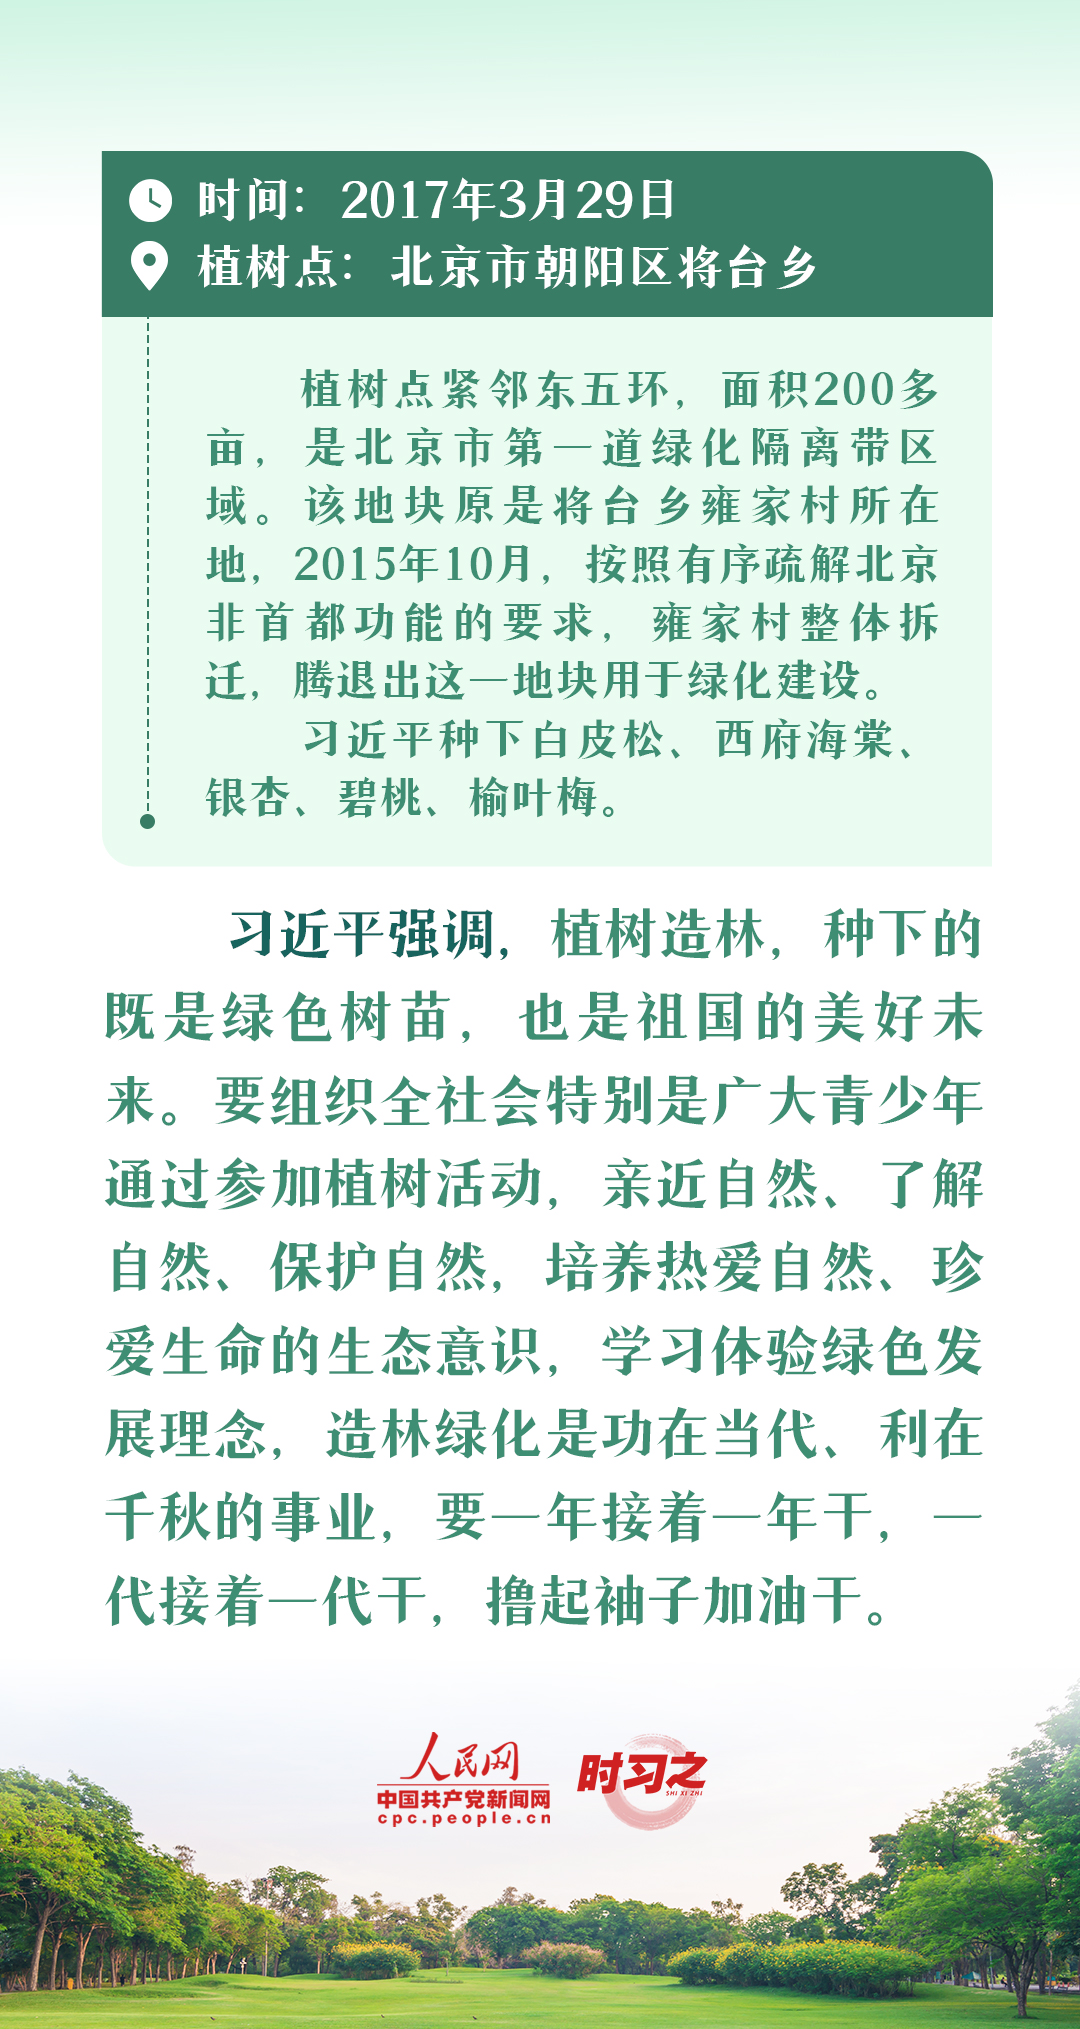 绘出美丽中国的更新画卷 与总书记一起厚植绿色未来